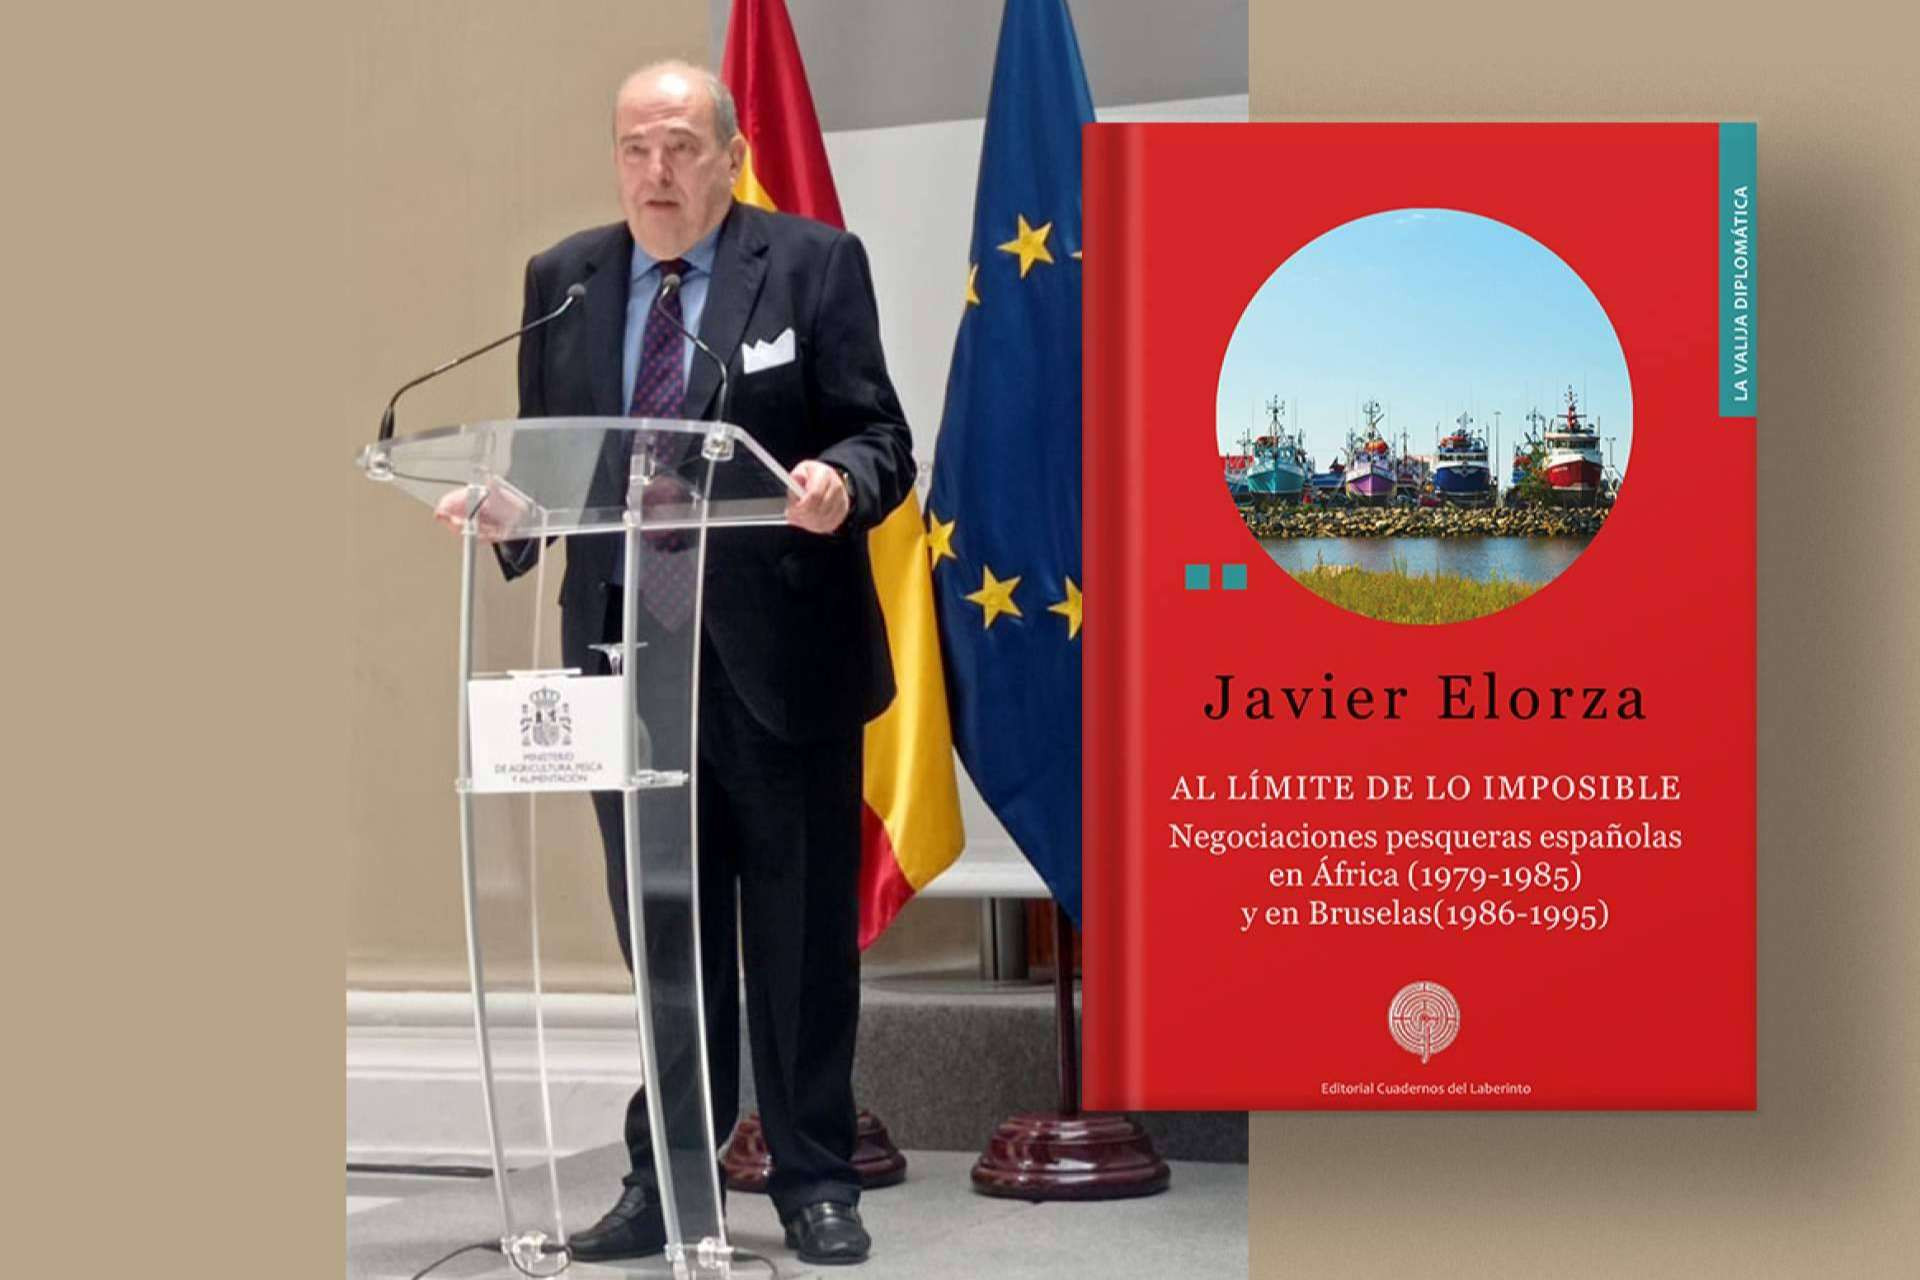  Llega a las librerías el nuevo libro de Javier Elorza sobre negociaciones pesqueras internacionales 